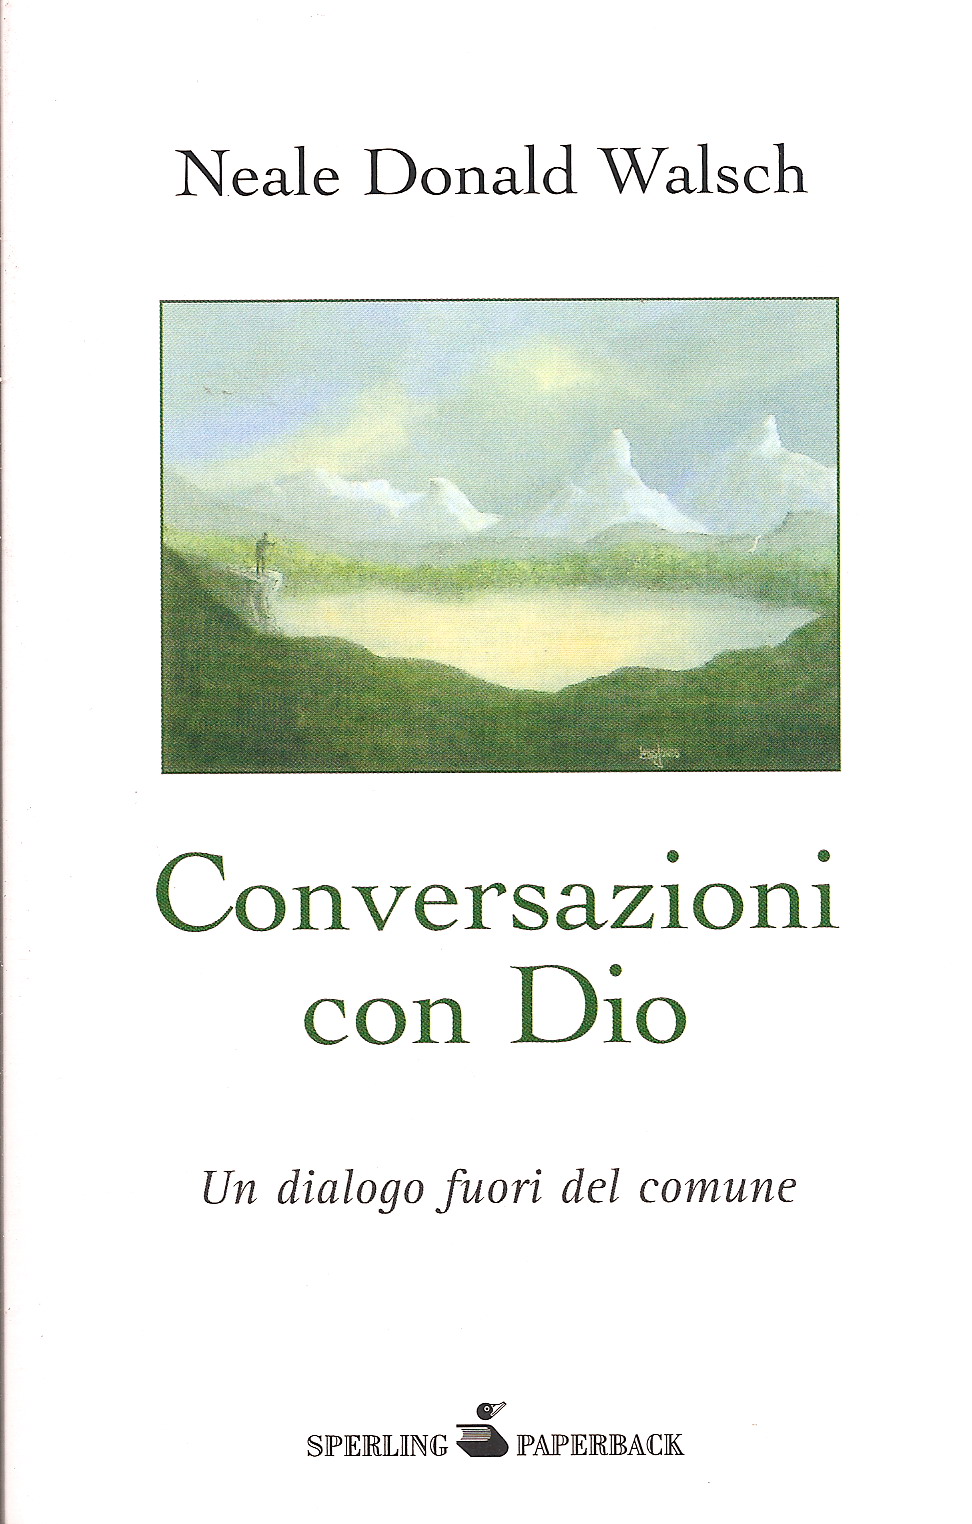 Conversazioni con Dio – Libro secondo – Neale Donald Walsch (approfondimento)